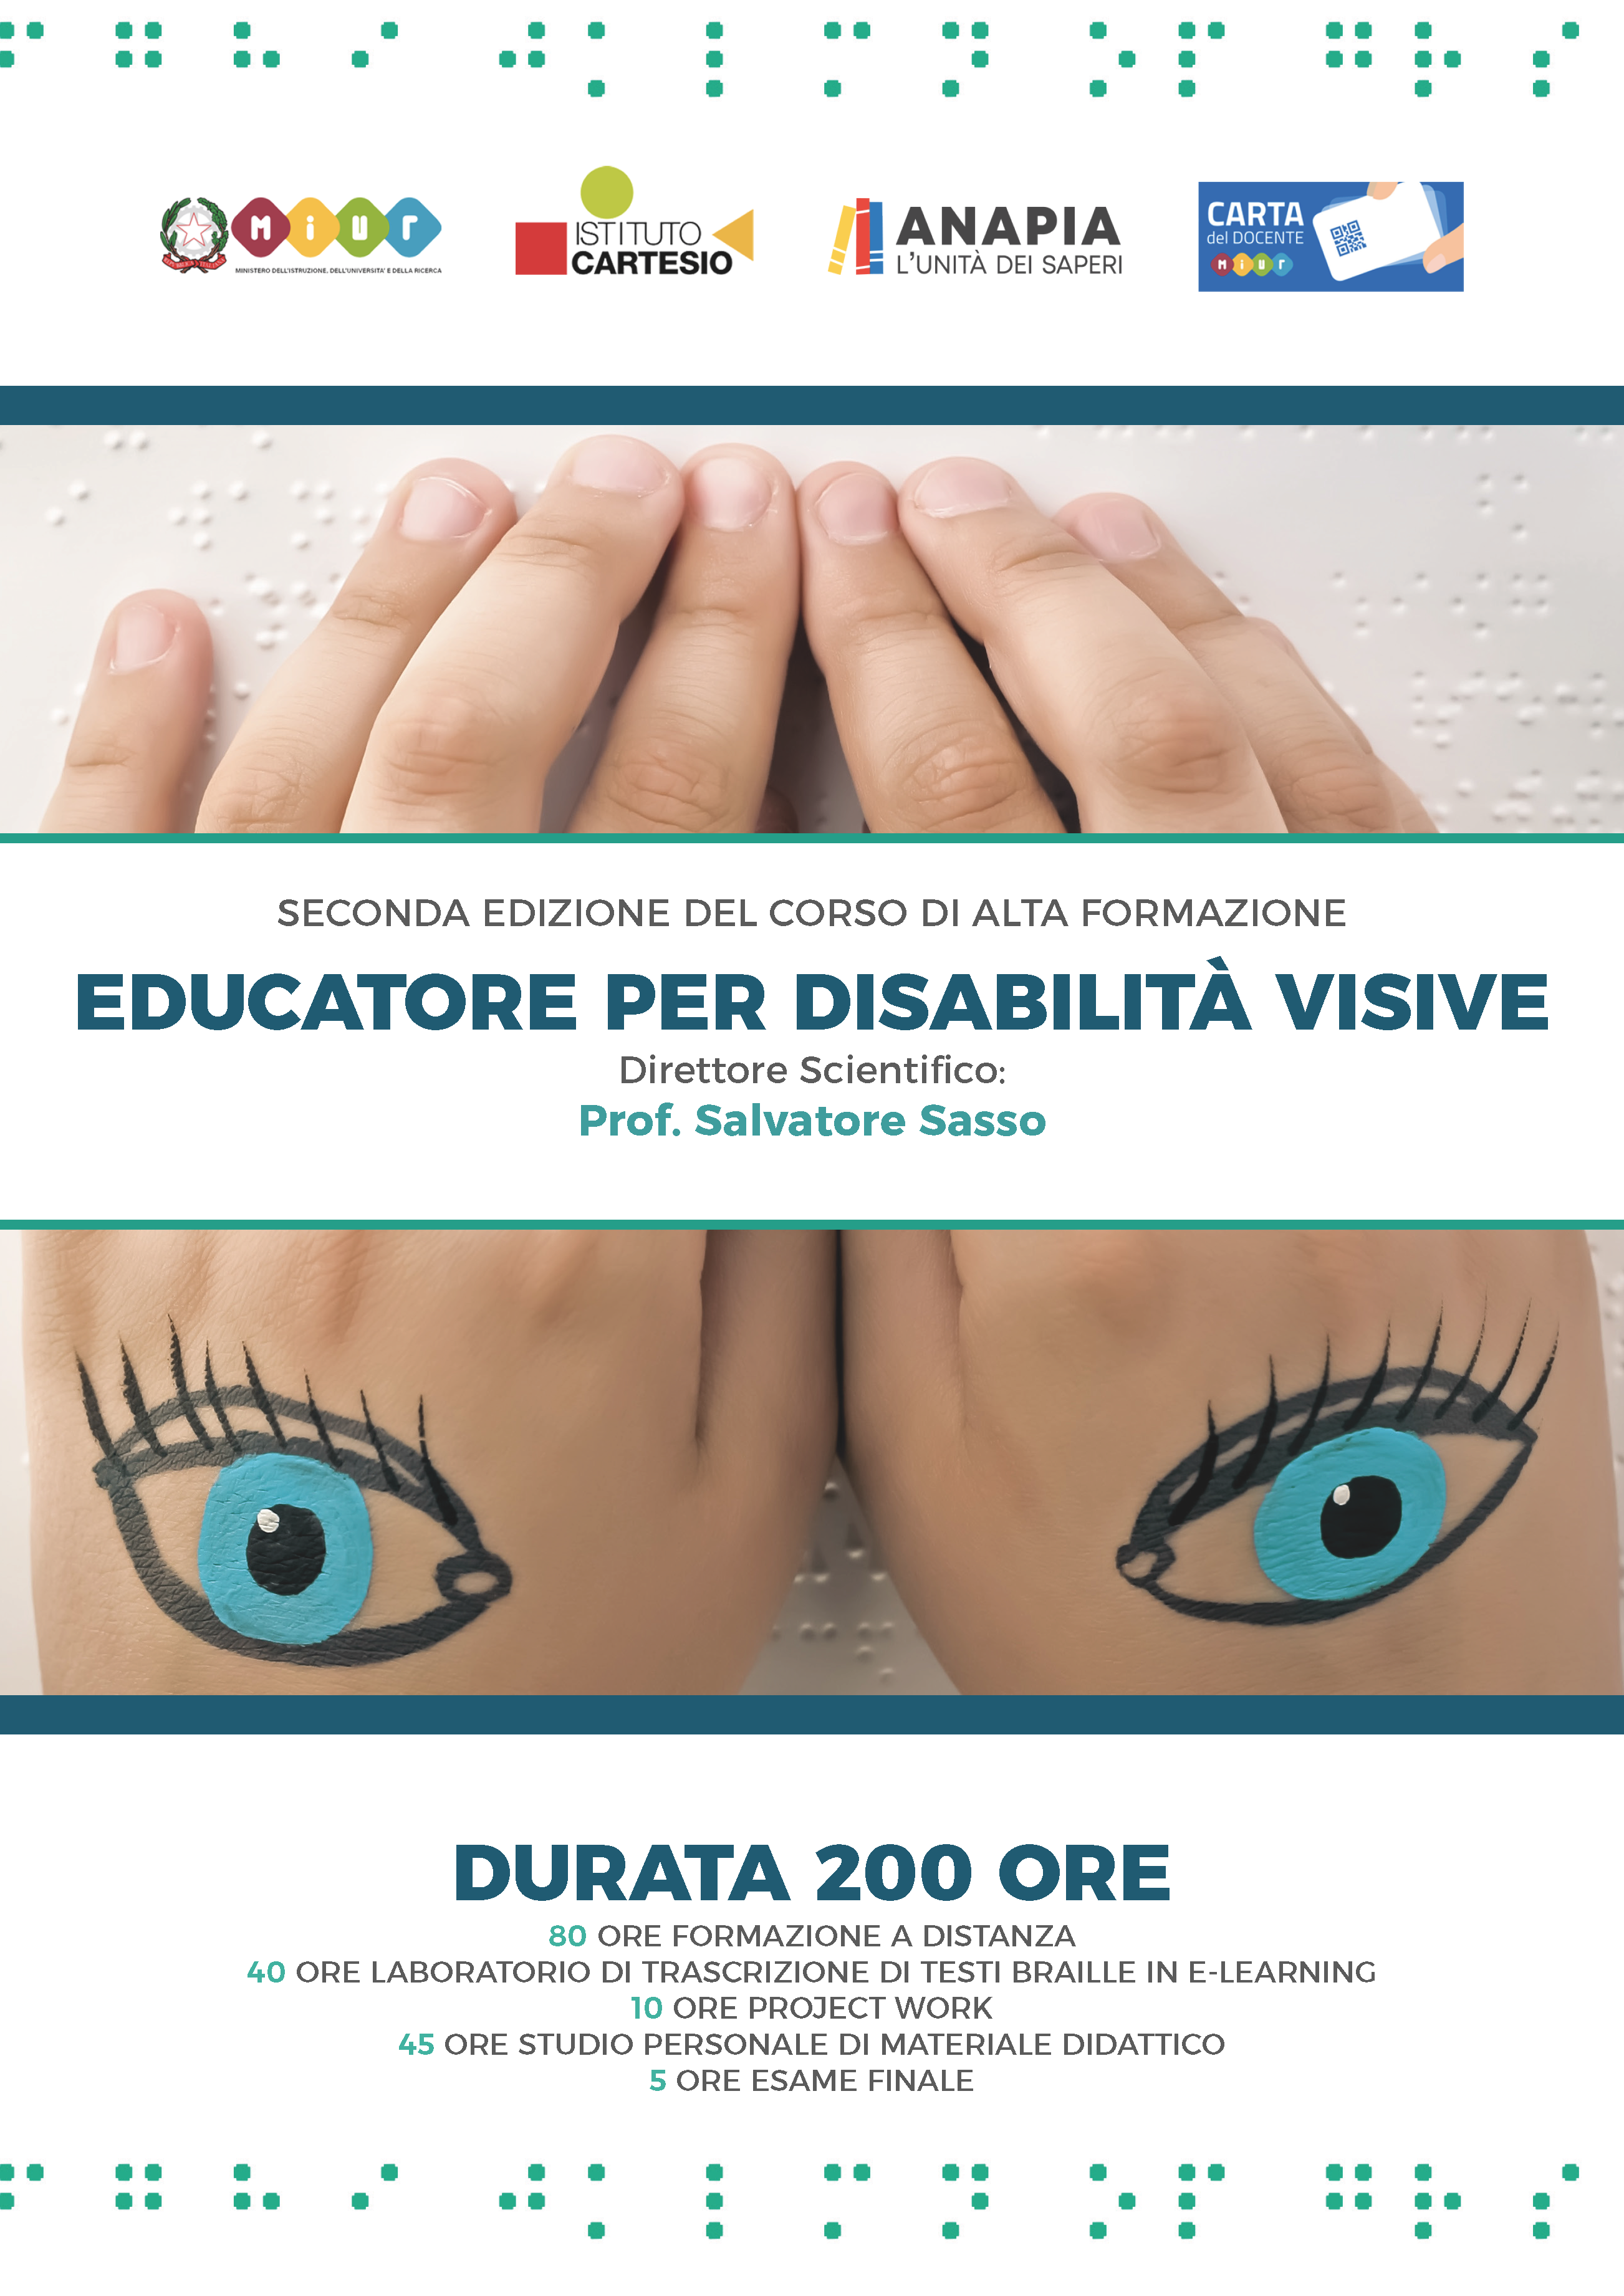 EDUCATORE DELLE DISABILITA' VISIVE